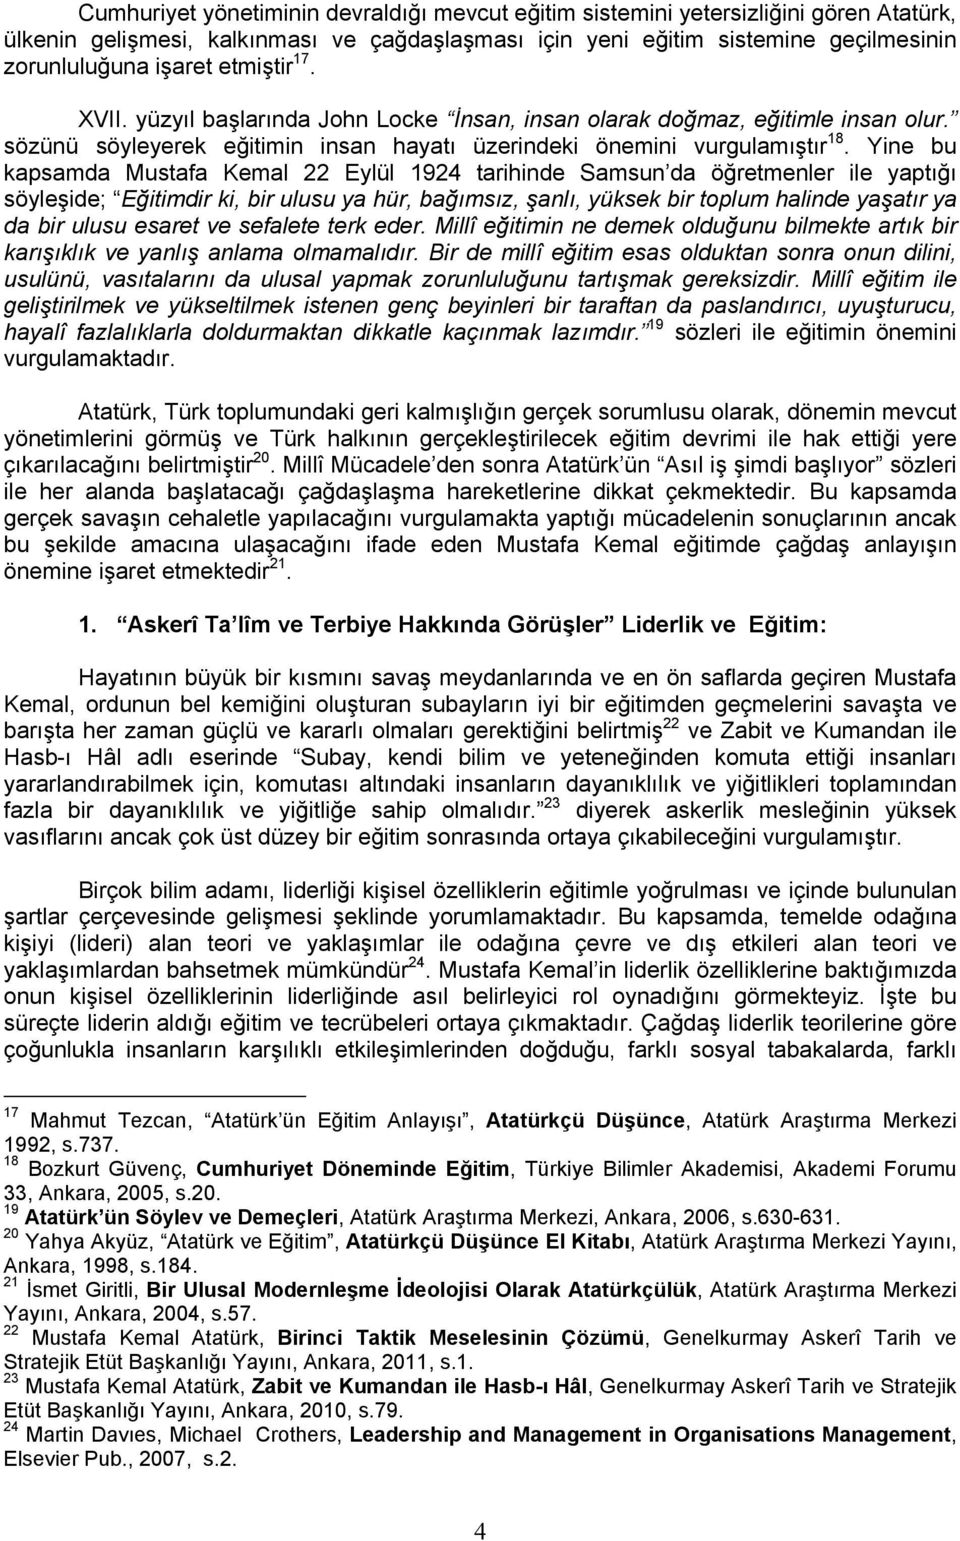 Yine bu kapsamda Mustafa Kemal 22 Eylül 1924 tarihinde Samsun da öğretmenler ile yaptığı söyleşide; Eğitimdir ki, bir ulusu ya hür, bağımsız, şanlı, yüksek bir toplum halinde yaşatır ya da bir ulusu